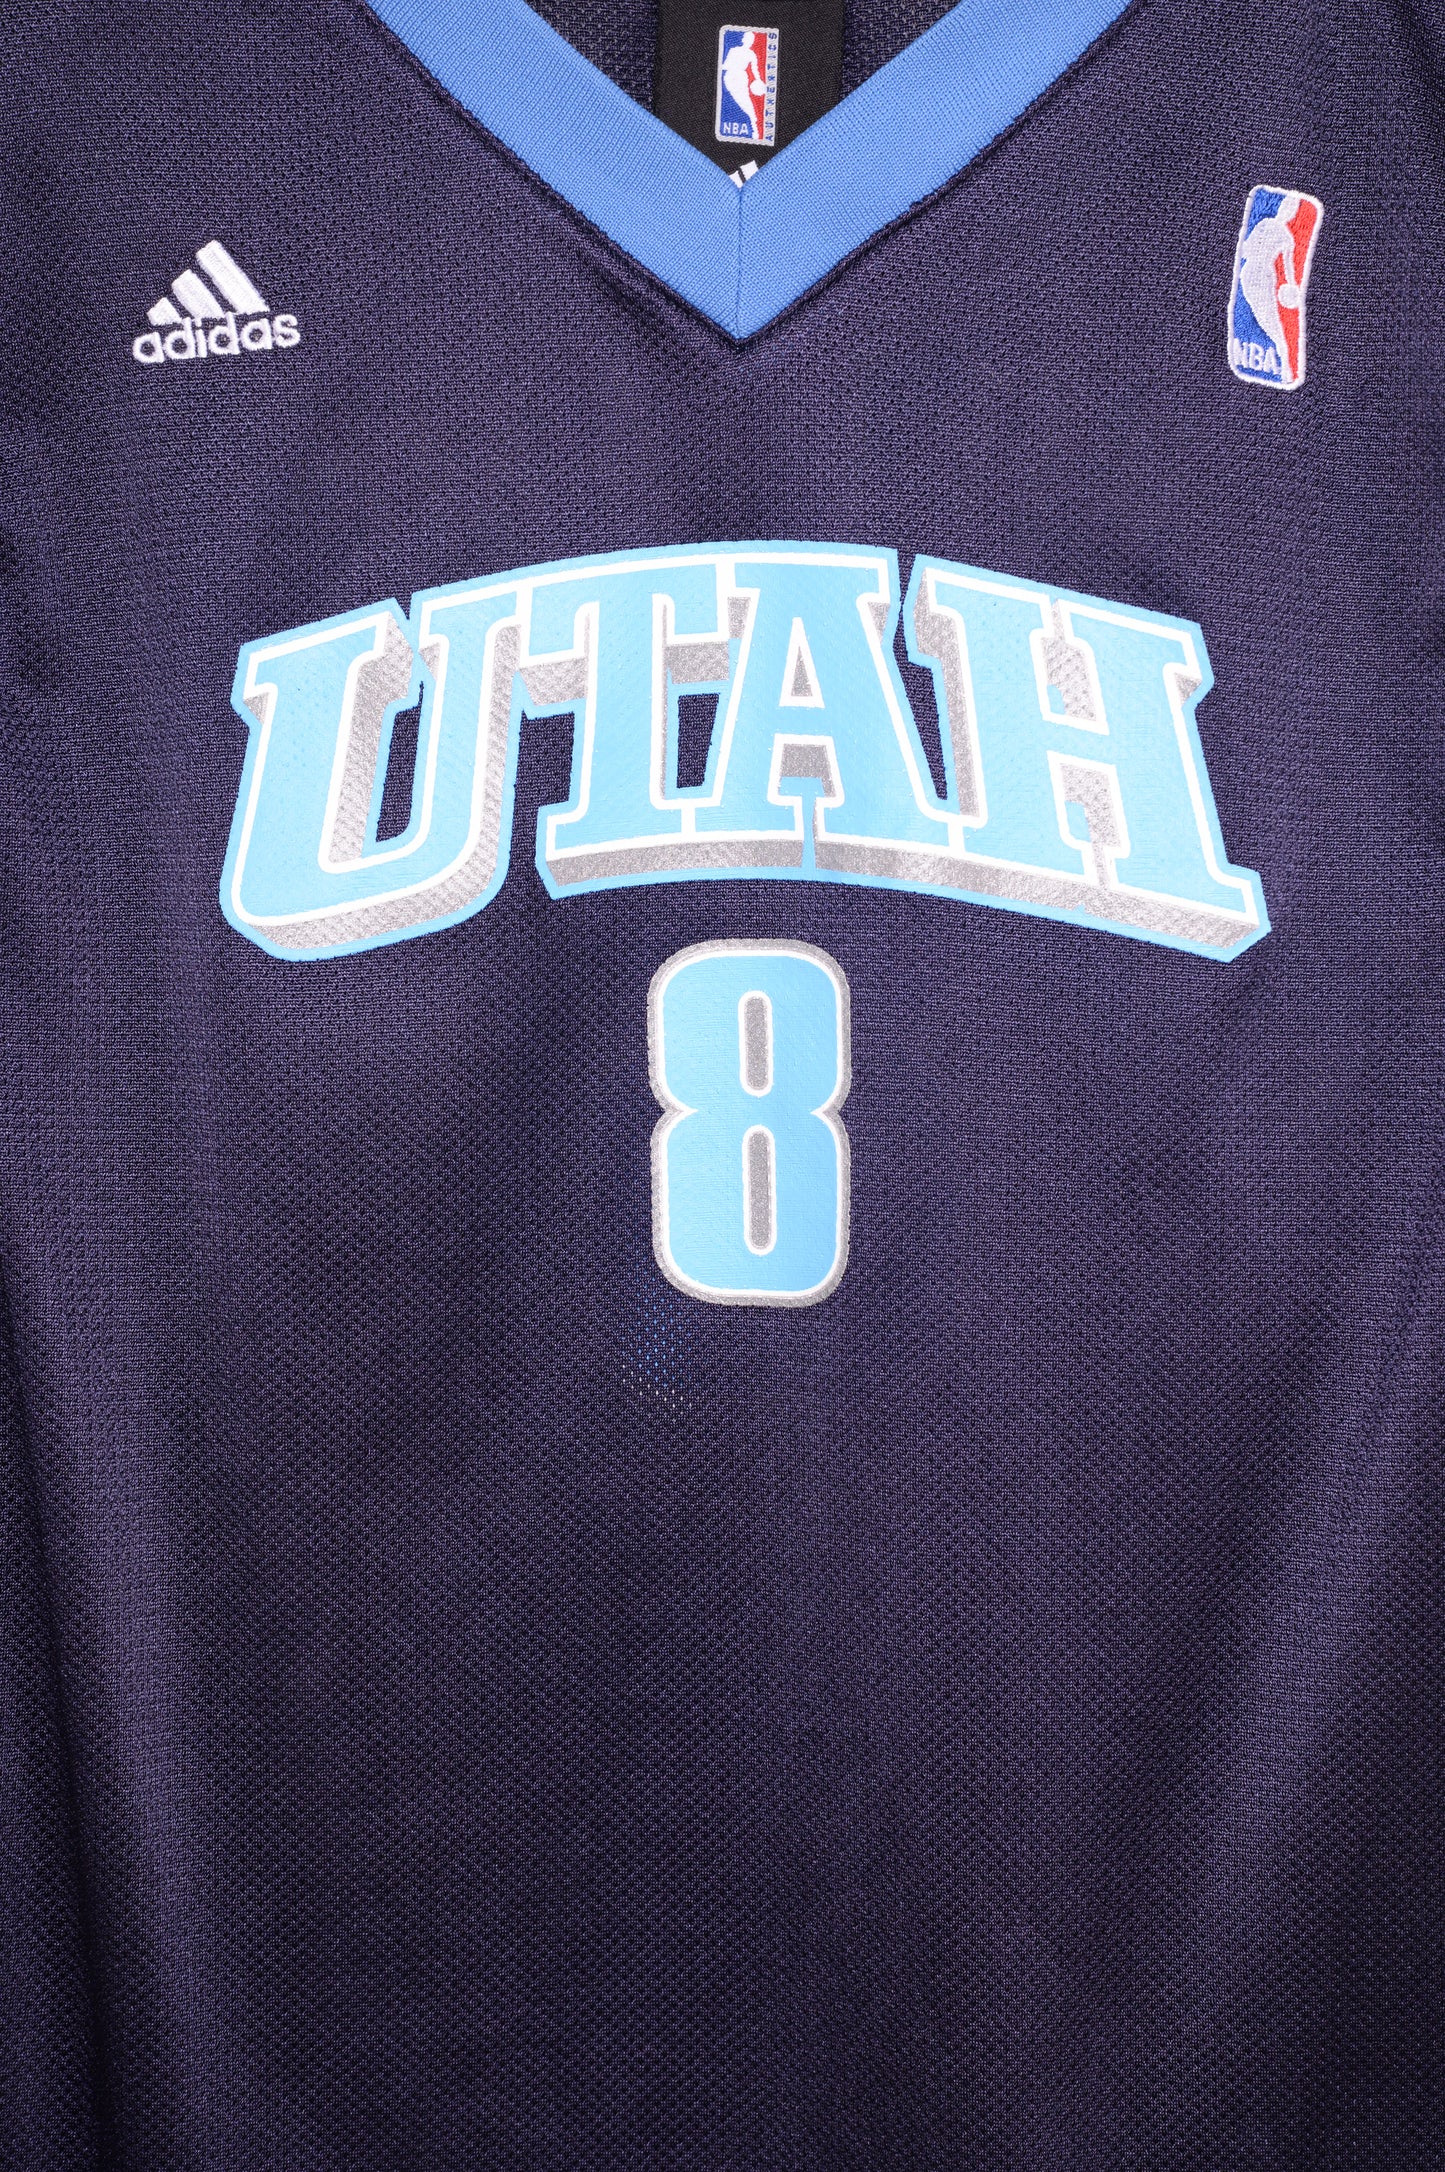 Adidas Utah Jazz Jersey